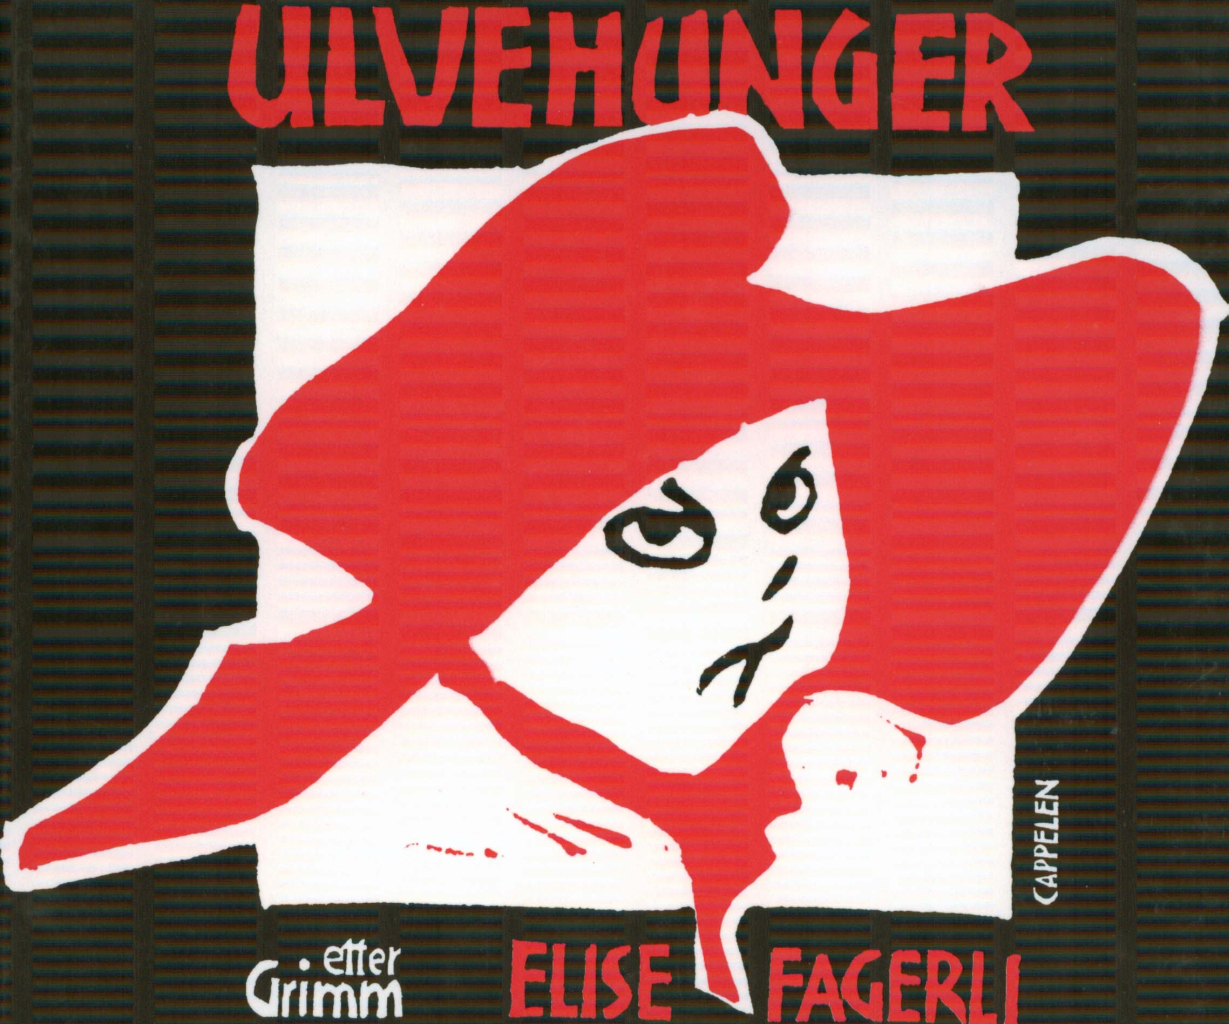 Titelblatt von Elise Fagerli: Ulvehunger. En bildebok av Elise Fagerli etteret eventyr av Grimm, Oslo: Cappelen 1995.